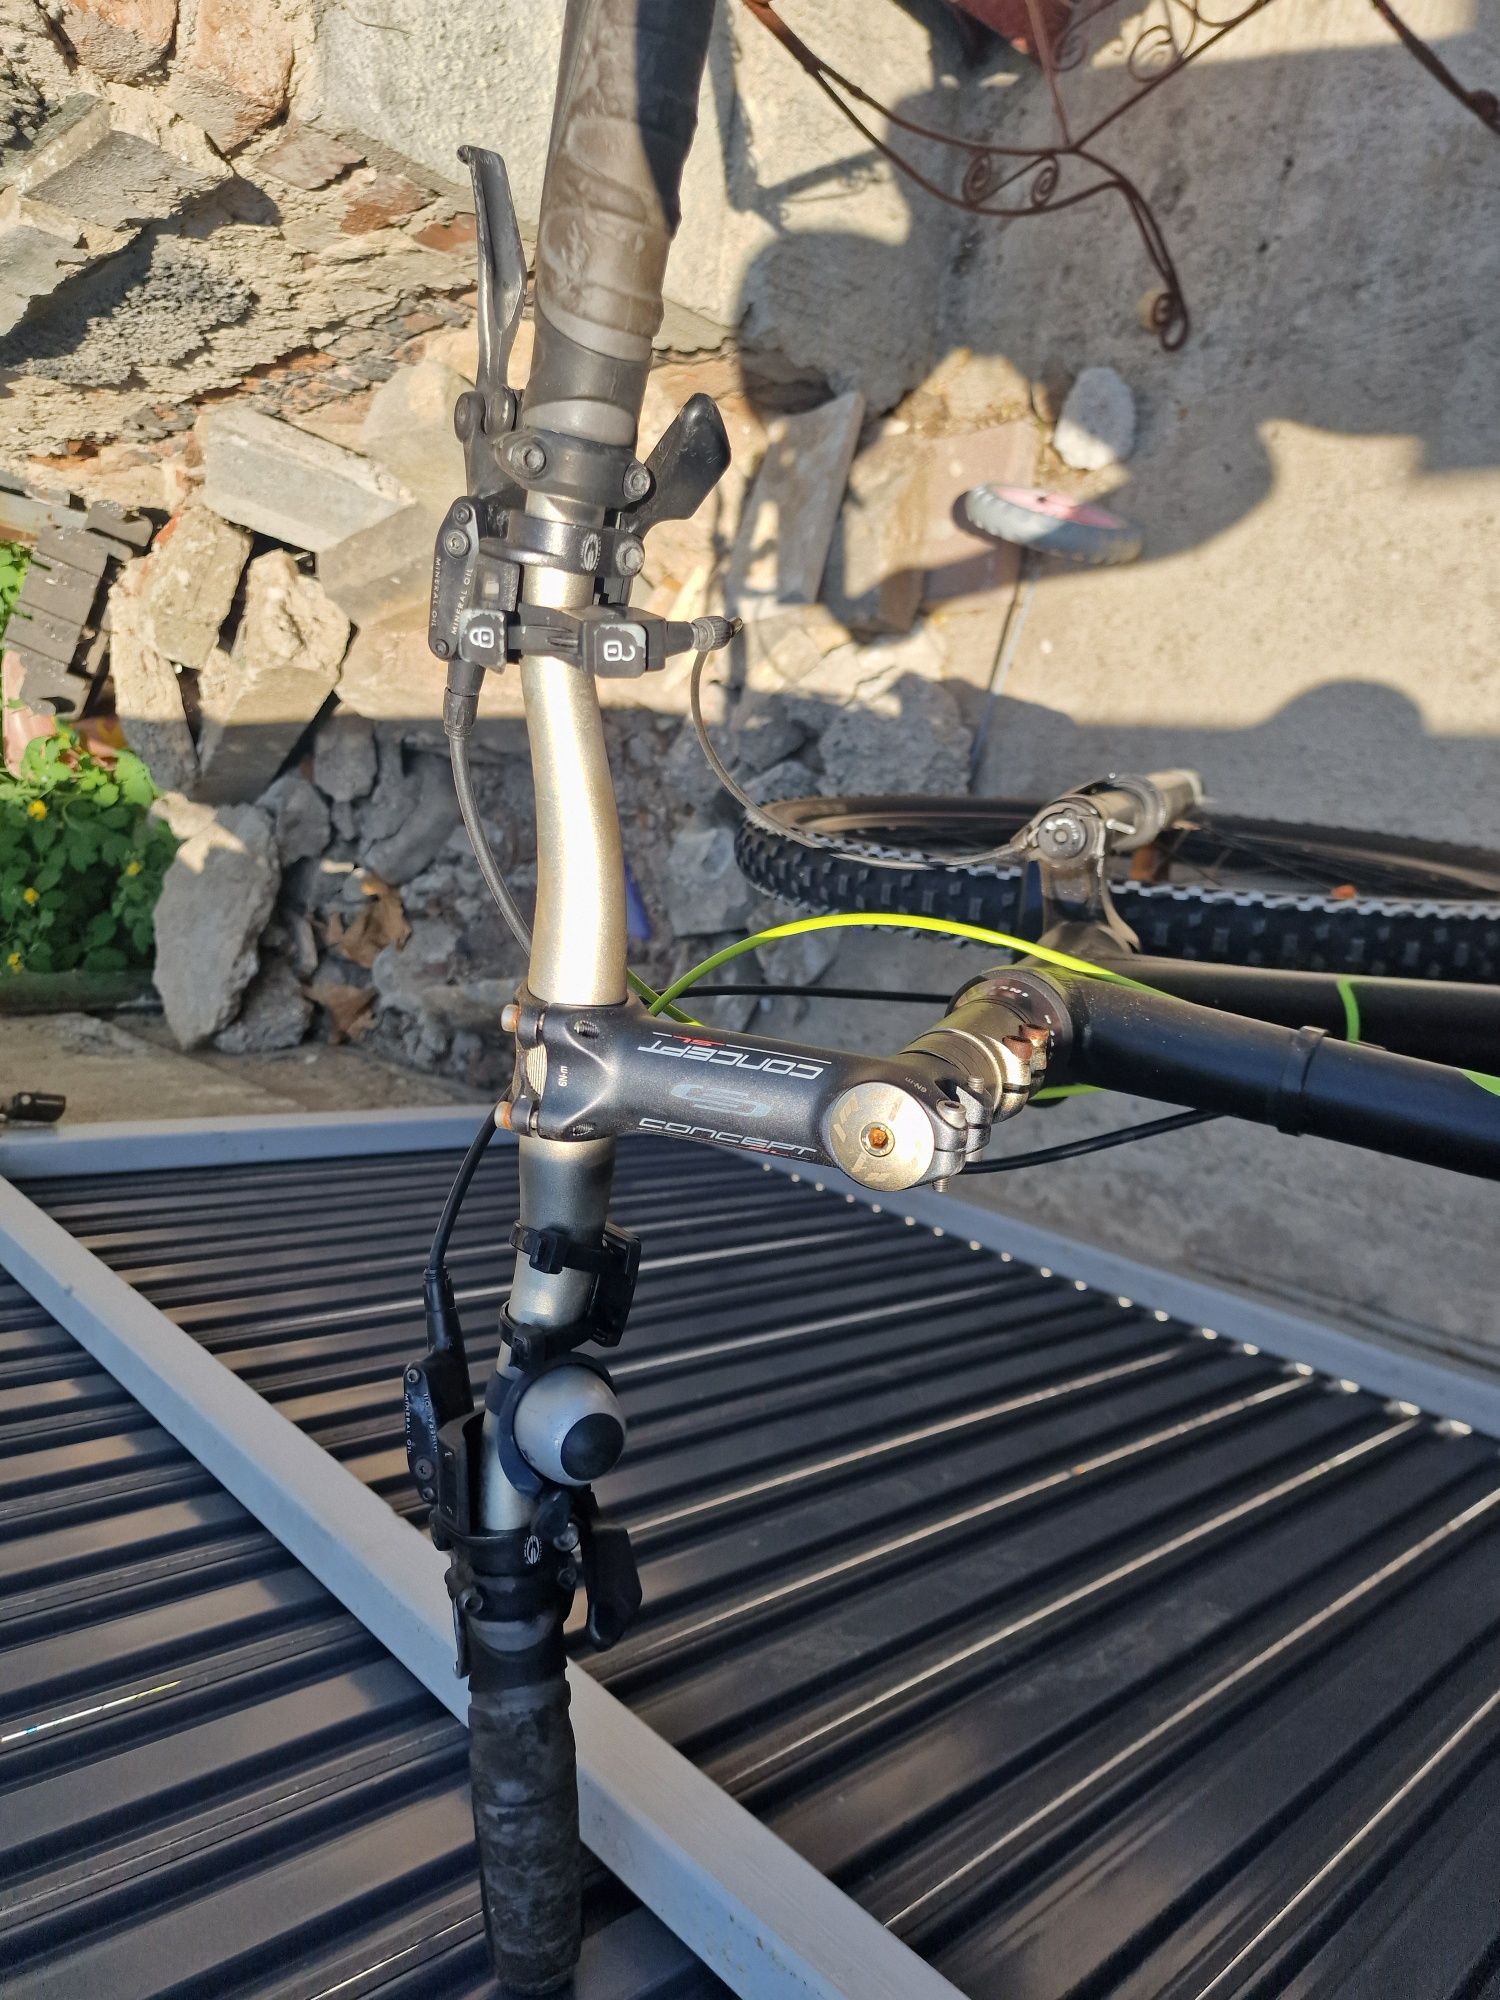 Bicicleta FOCUS cu Suspensie FATA si Frane Hidraulice pe disc fata spa